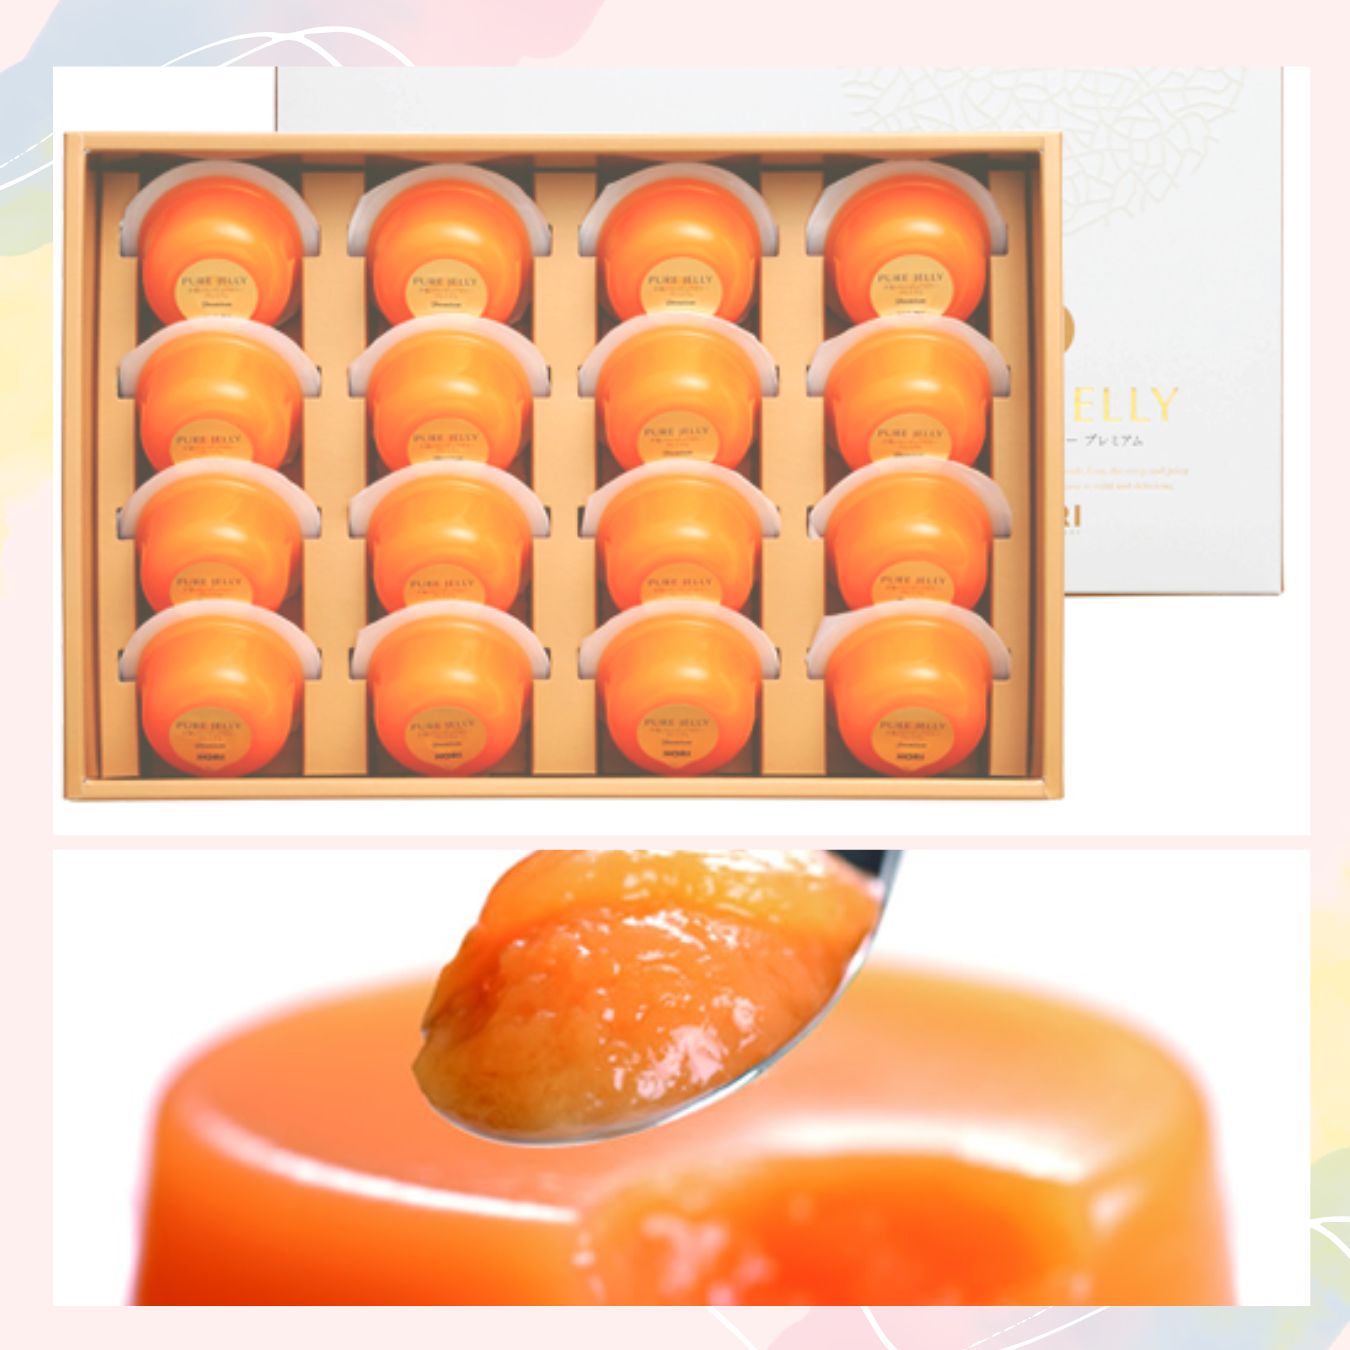 Yubari Melon Pure Jelly Premium Hori - JapanHapiness